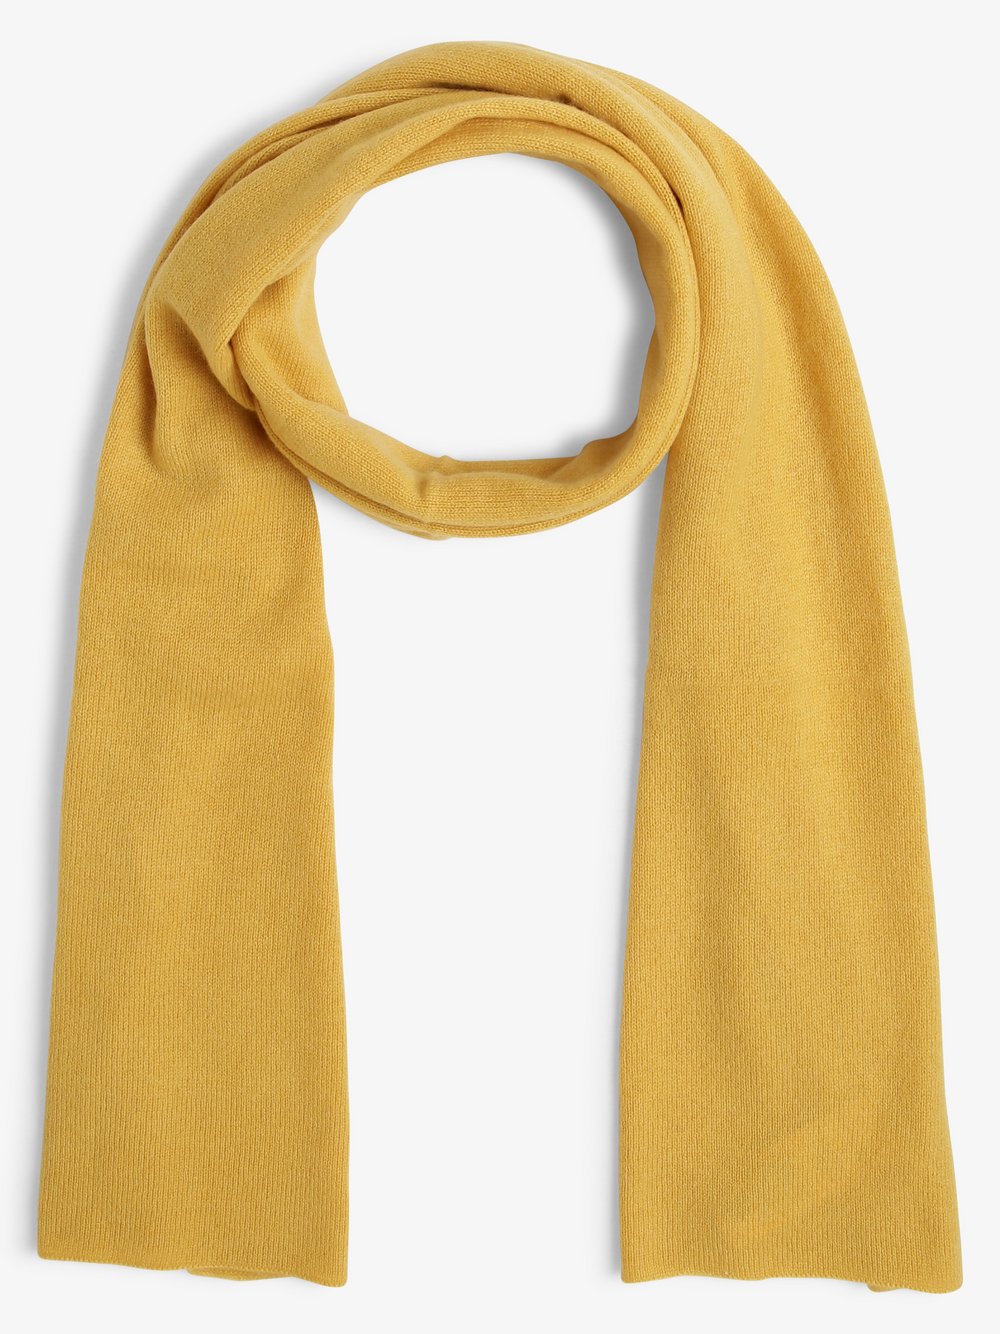 Marie Lund - Damski szalik z czystego kaszmiru, żółty